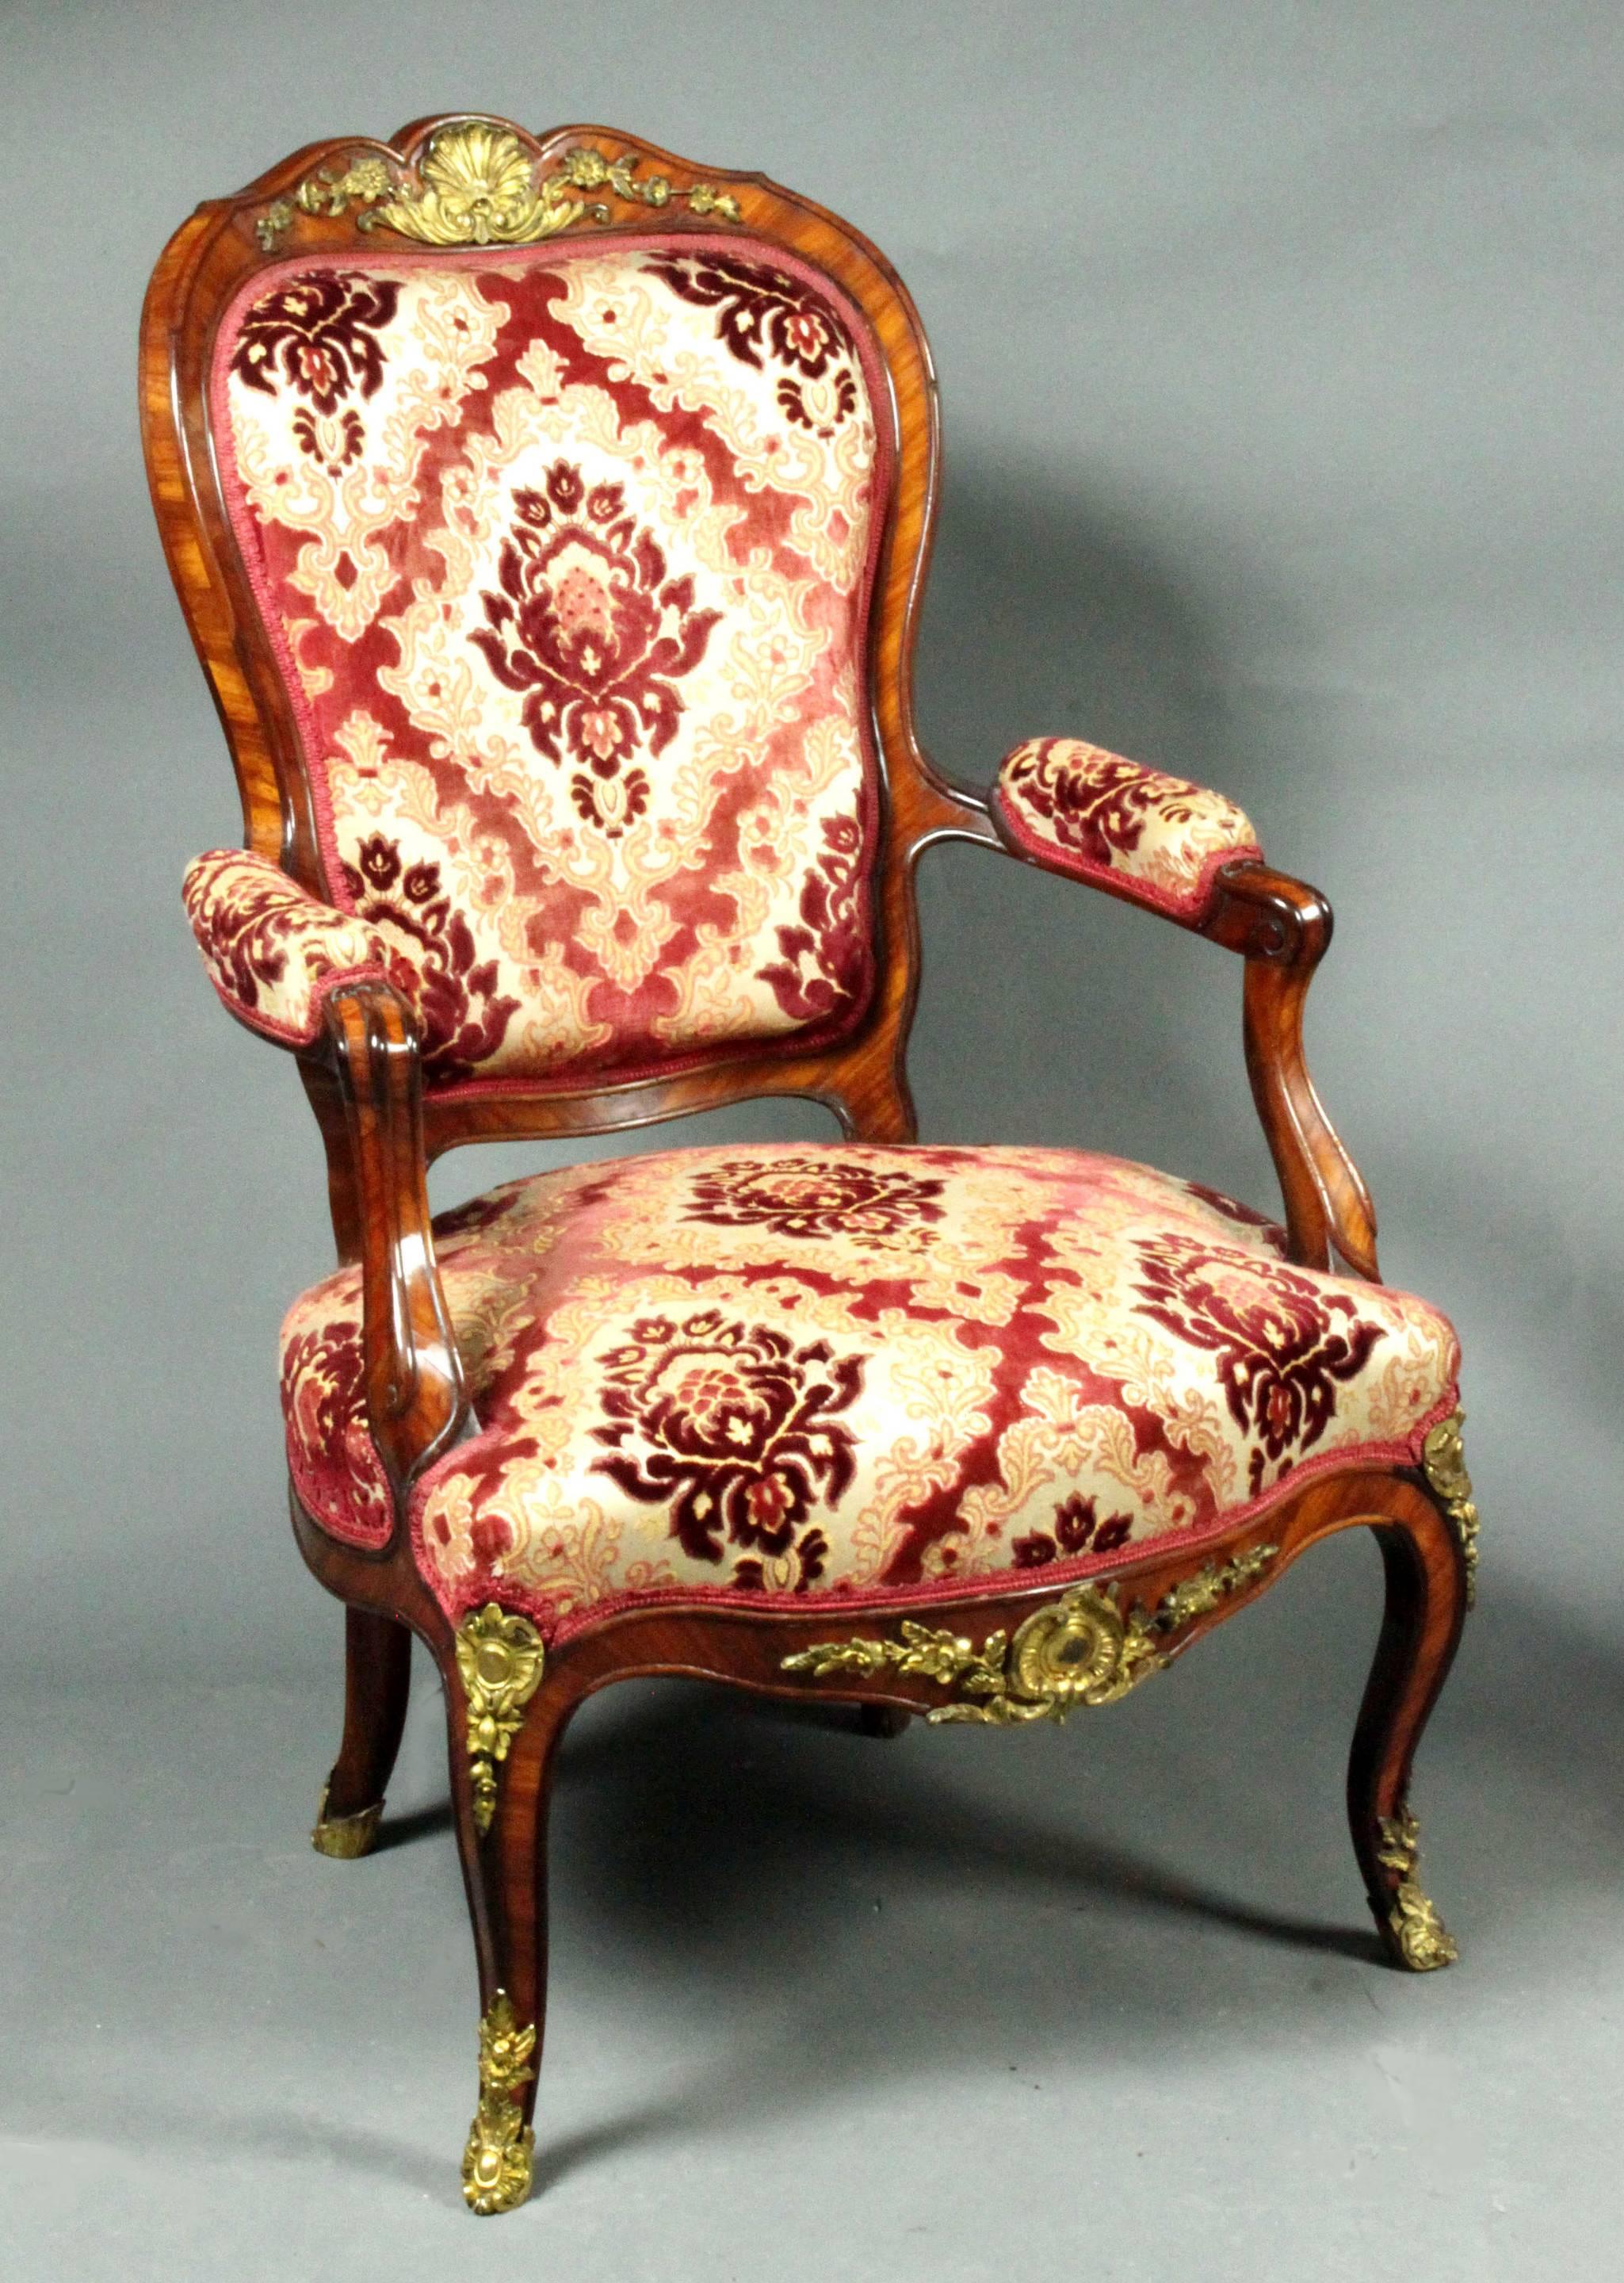 Une belle paire de chaises de style Louis XV. Bande transversale en os à chevrons en bois de roi et les montures originales en bronze doré.